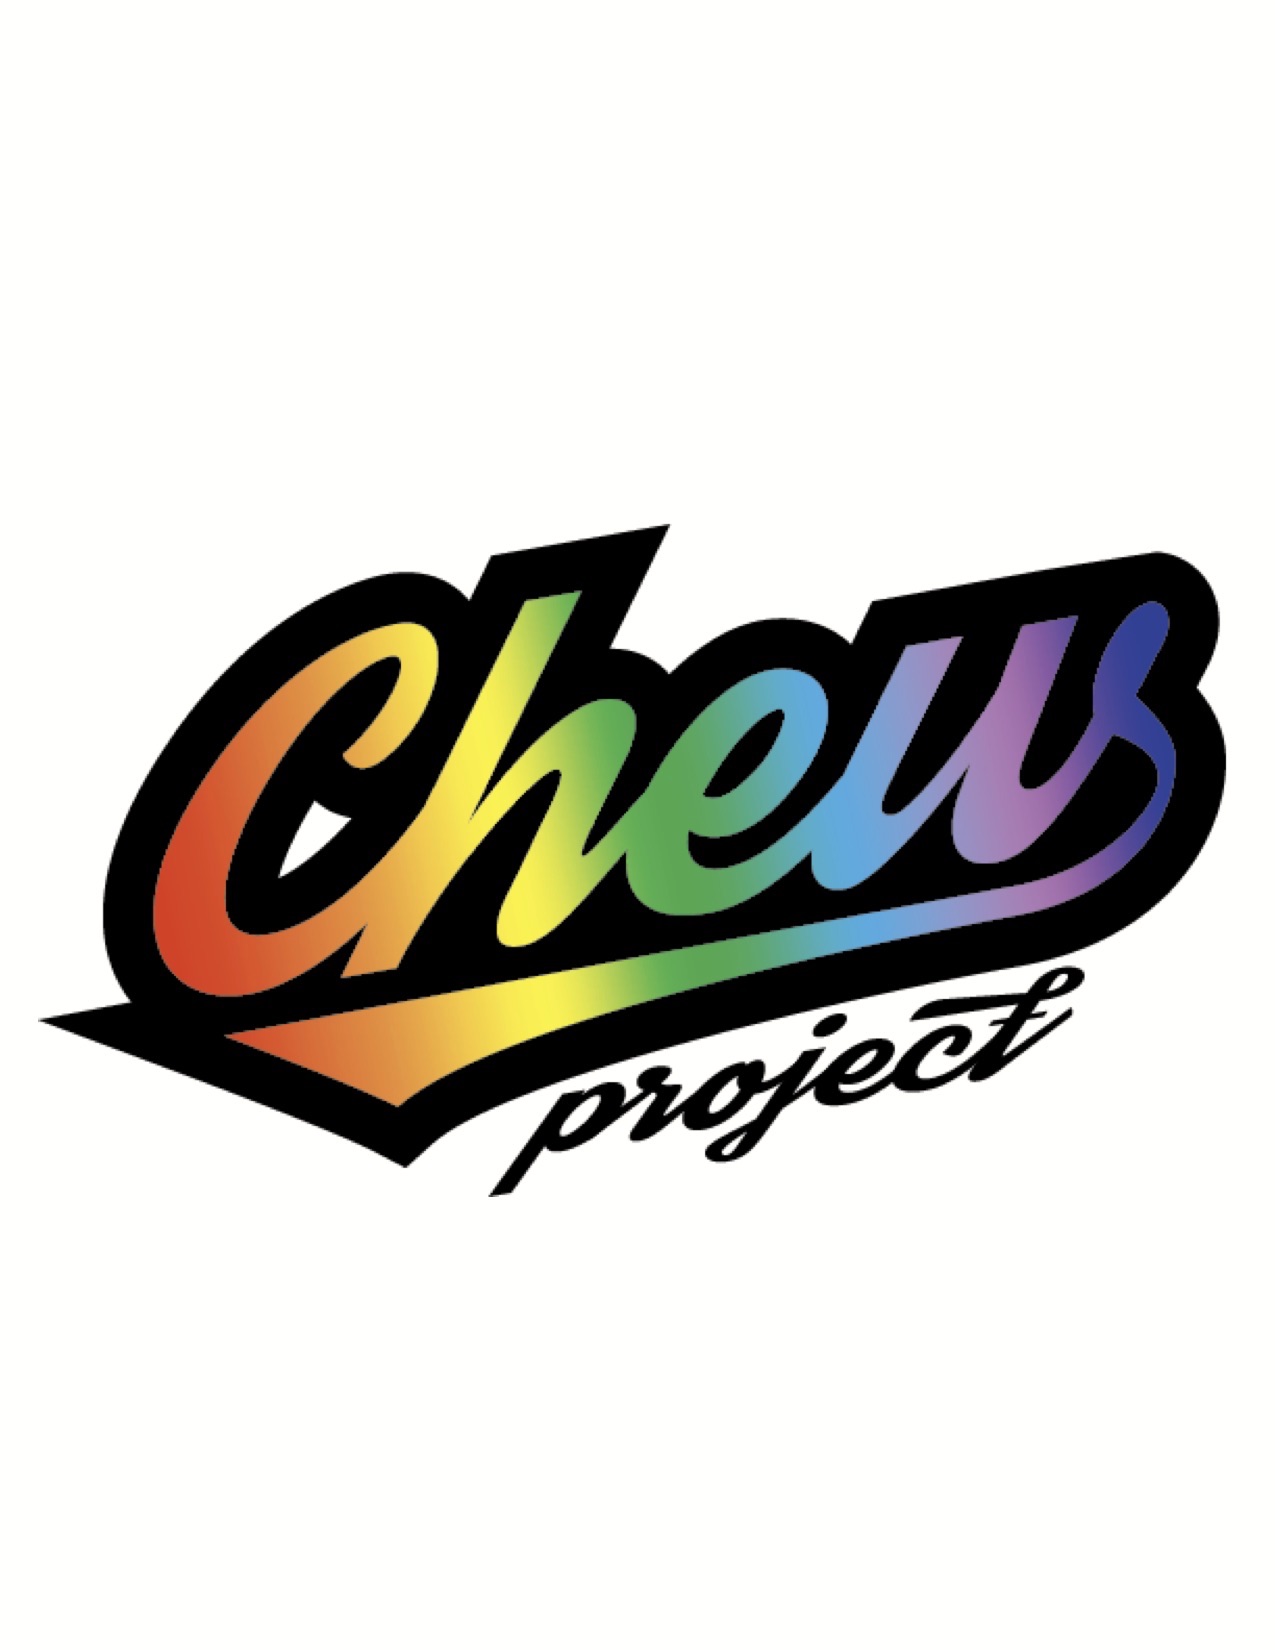 chew-logo-new-jpg.jpg